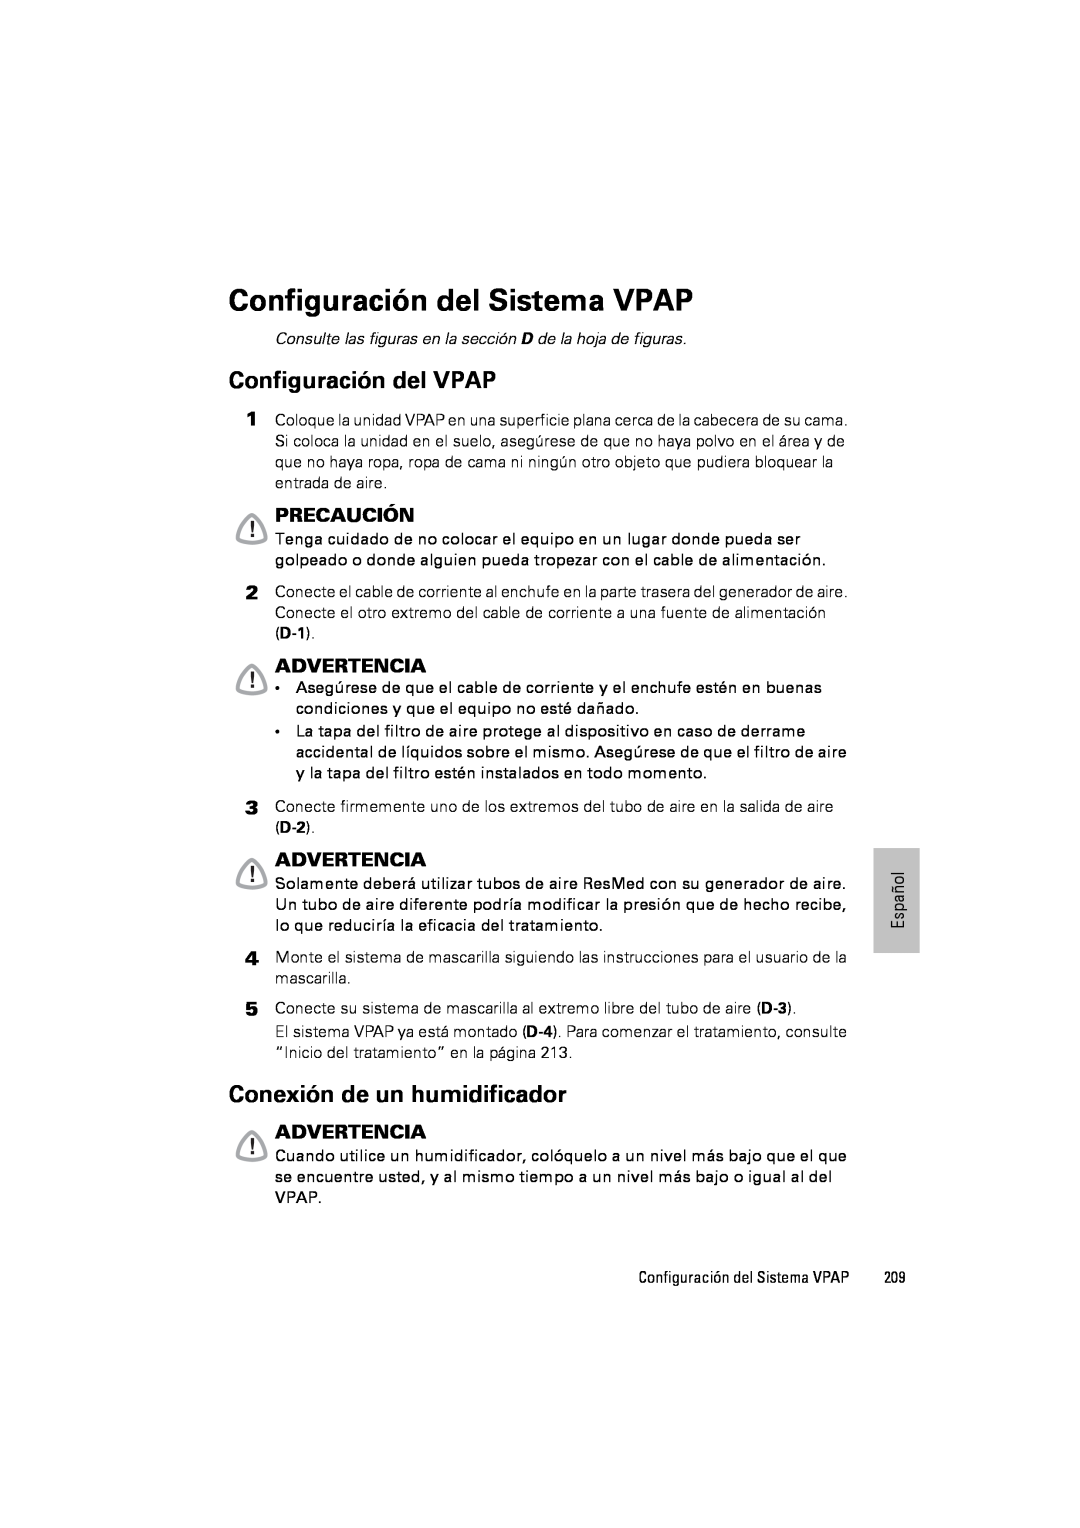 ResMed III & III ST Configuración del Sistema VPAP, Configuración del VPAP, Conexión de un humidificador, Precaución 